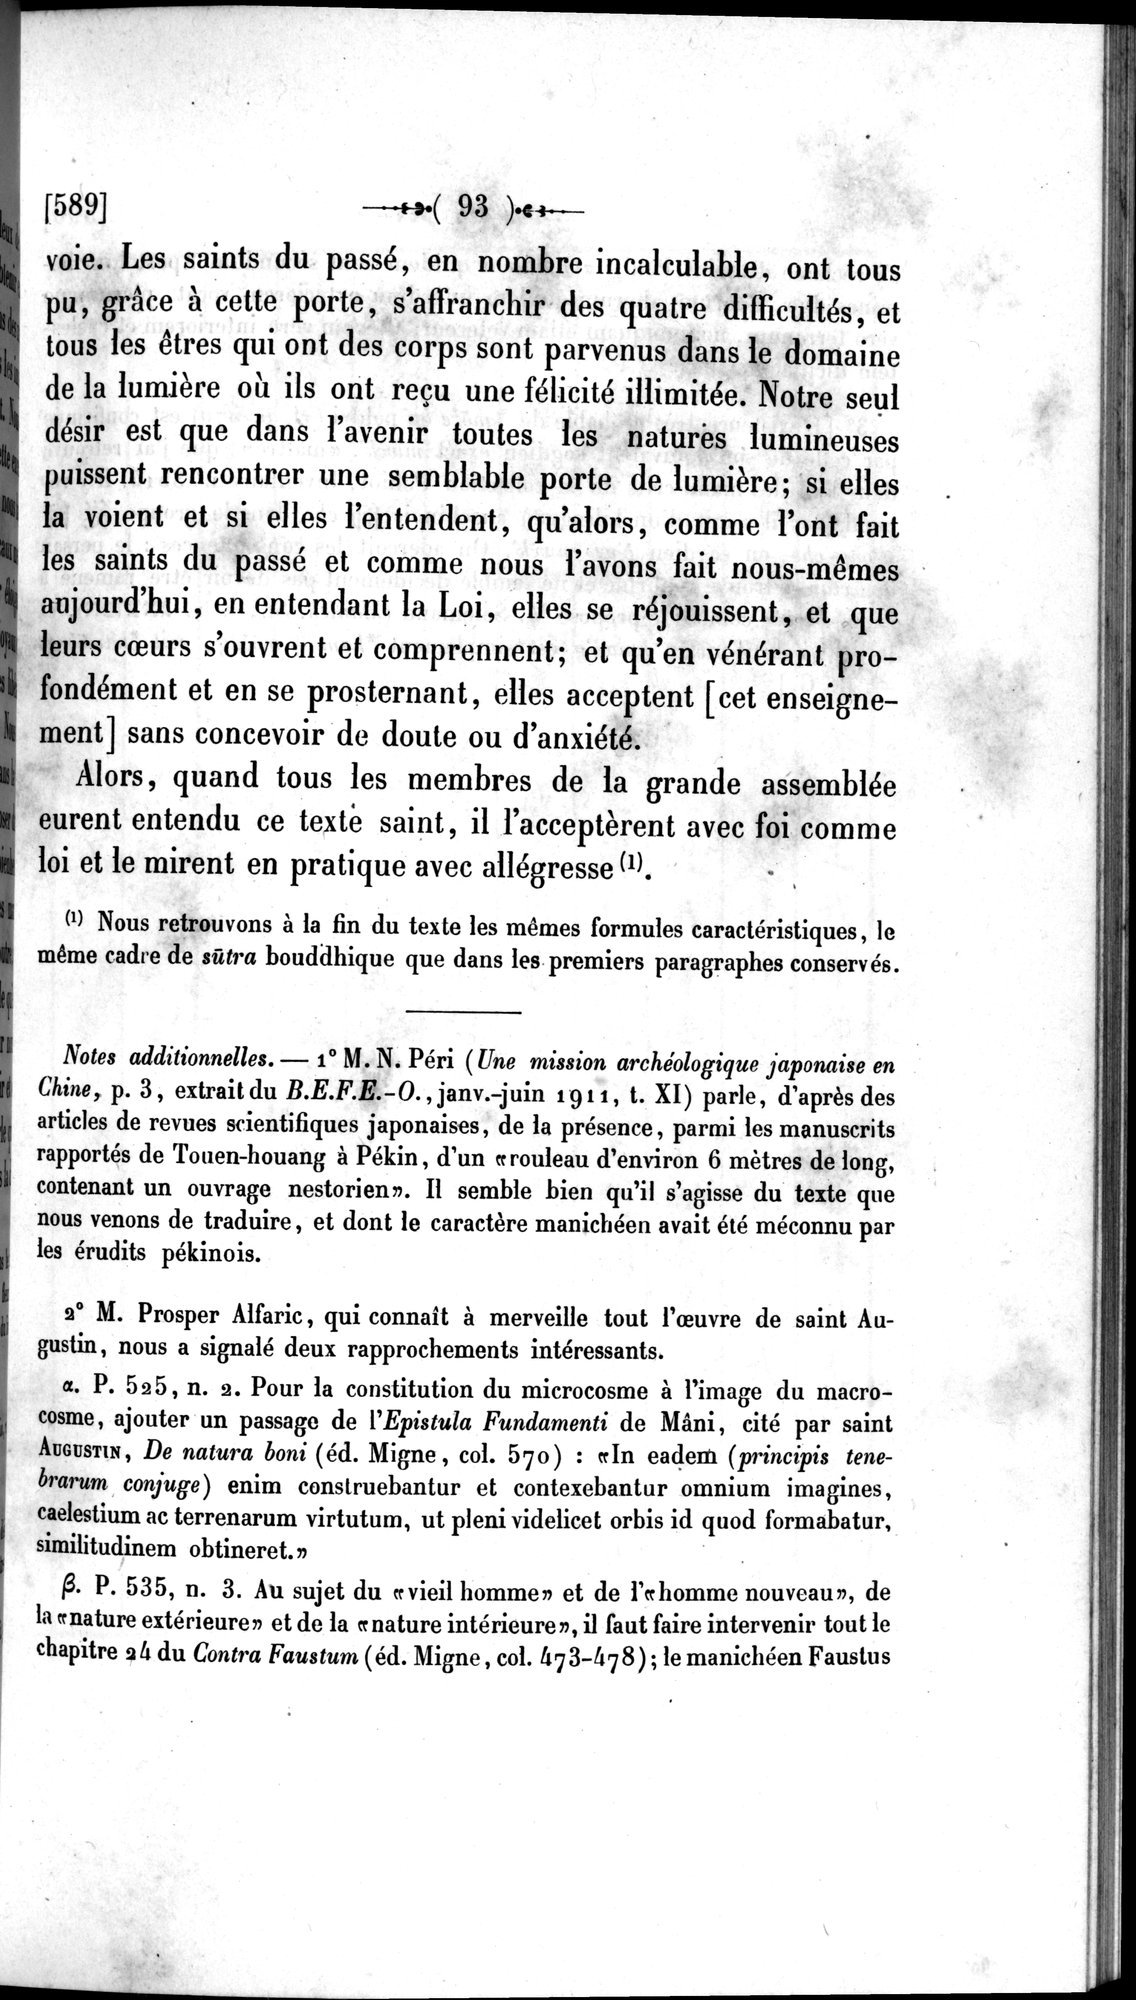 Un traité manichéen retrouvé en Chine : vol.1 / Page 103 (Grayscale High Resolution Image)